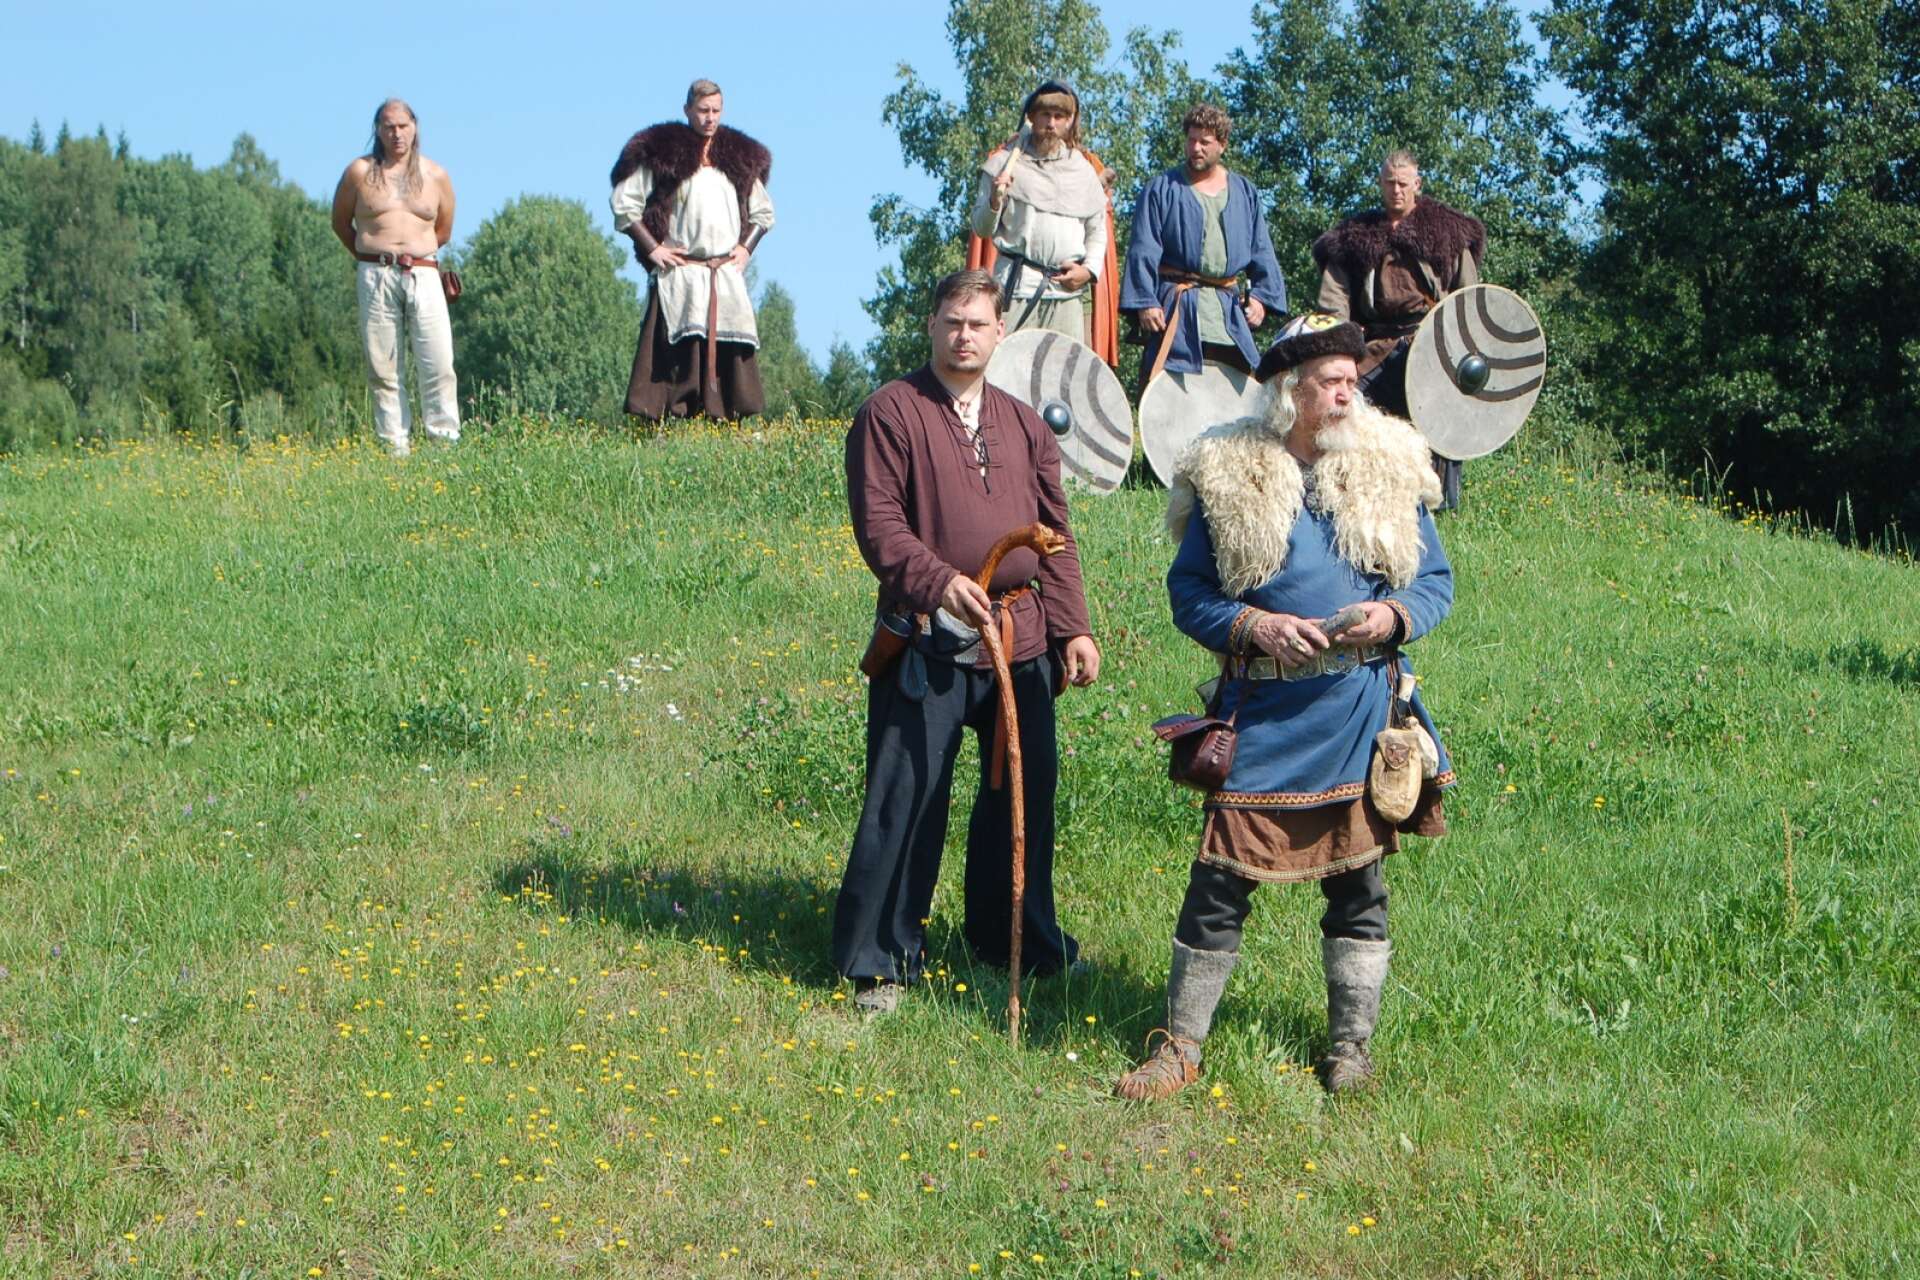 Värmlands Vikingacenter drivs ideellt av cirka 200 aktiva medlemmar. Här kan man fly nutiden en stund och kliva in i miljön på vikingatiden, en garanterad succé för de yngre!